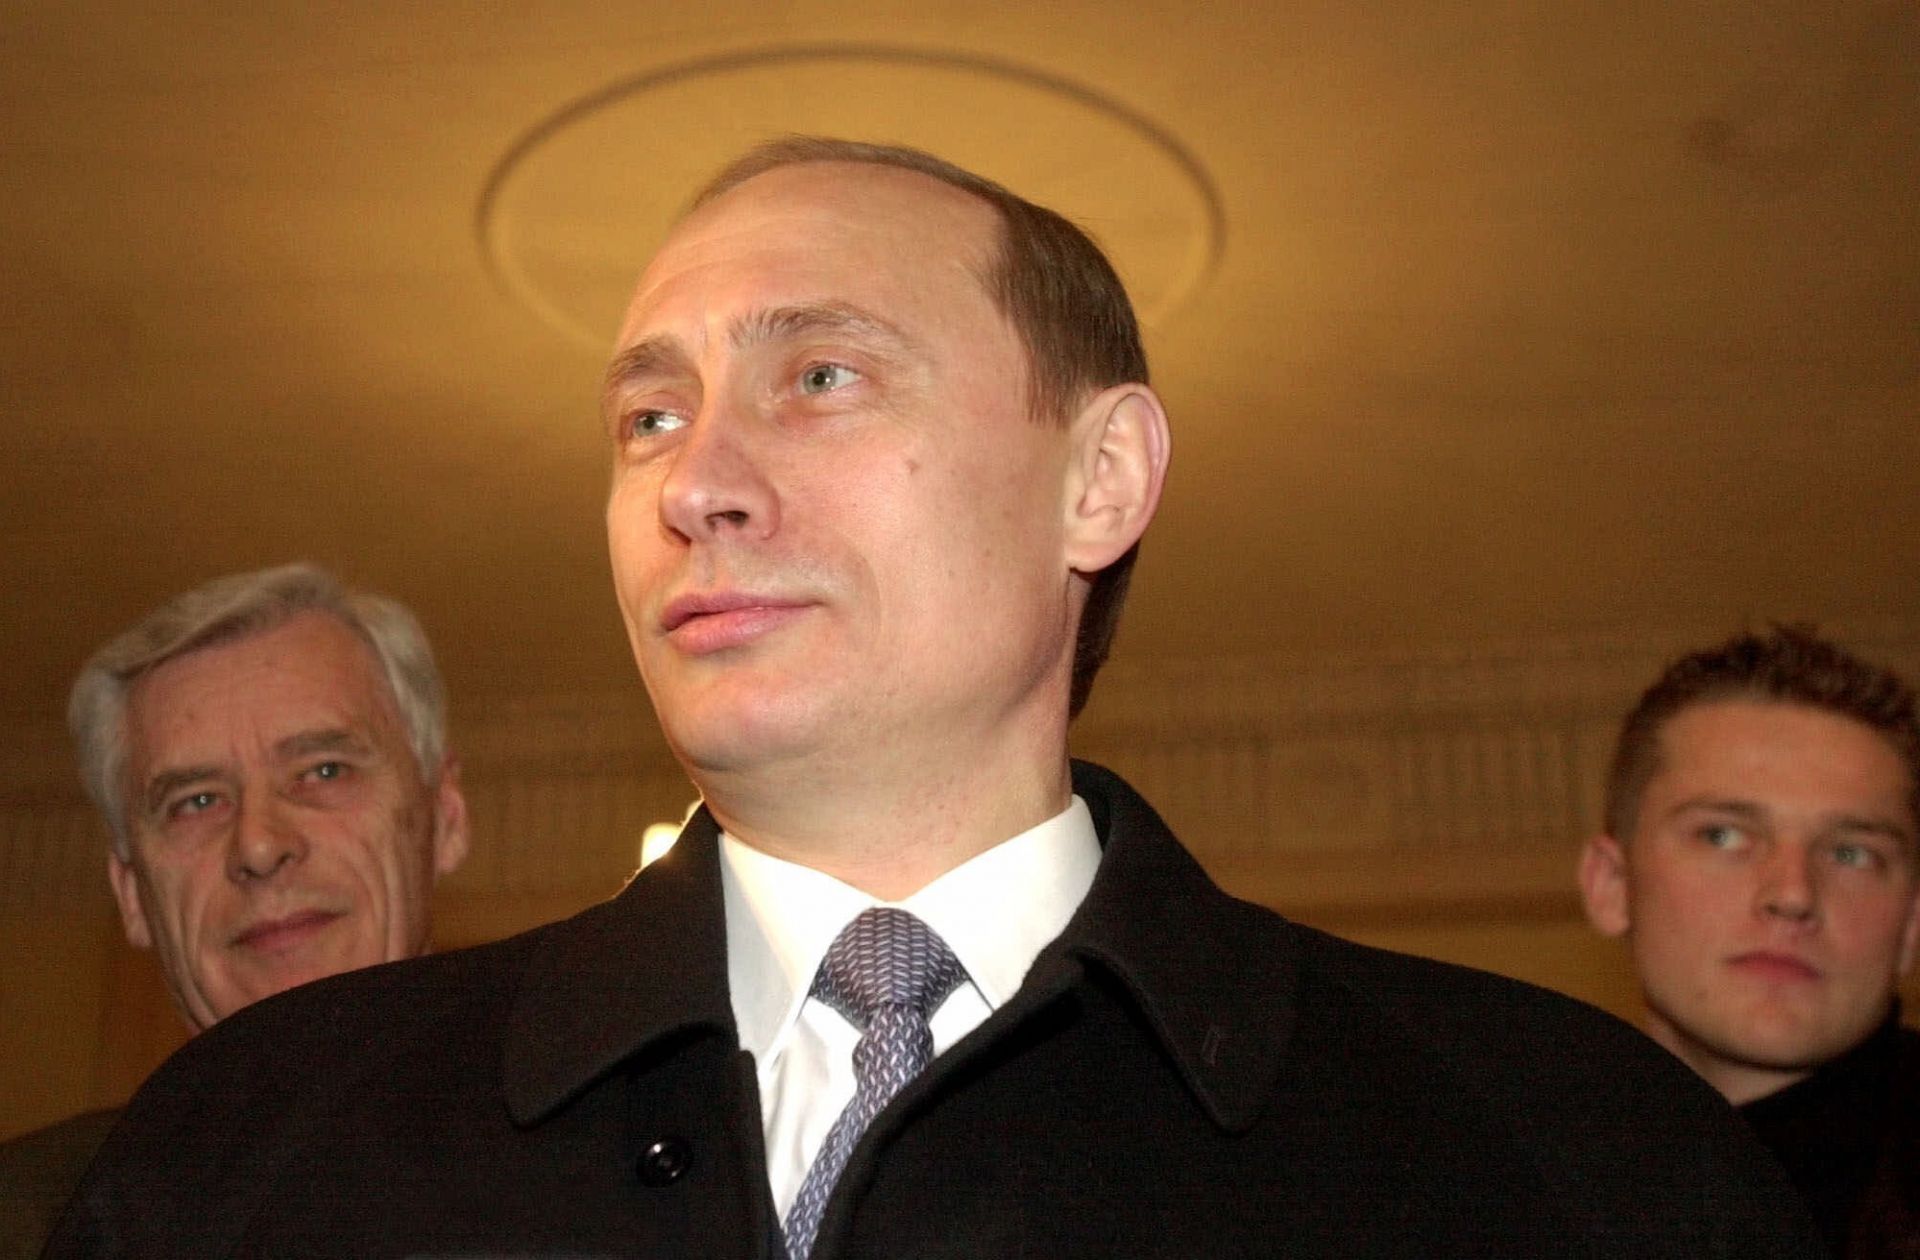 Владимир Путин през март 2000 г. Почти 20 години по-късно някои още го виждат с ореол около главата, докато за други е диктатор